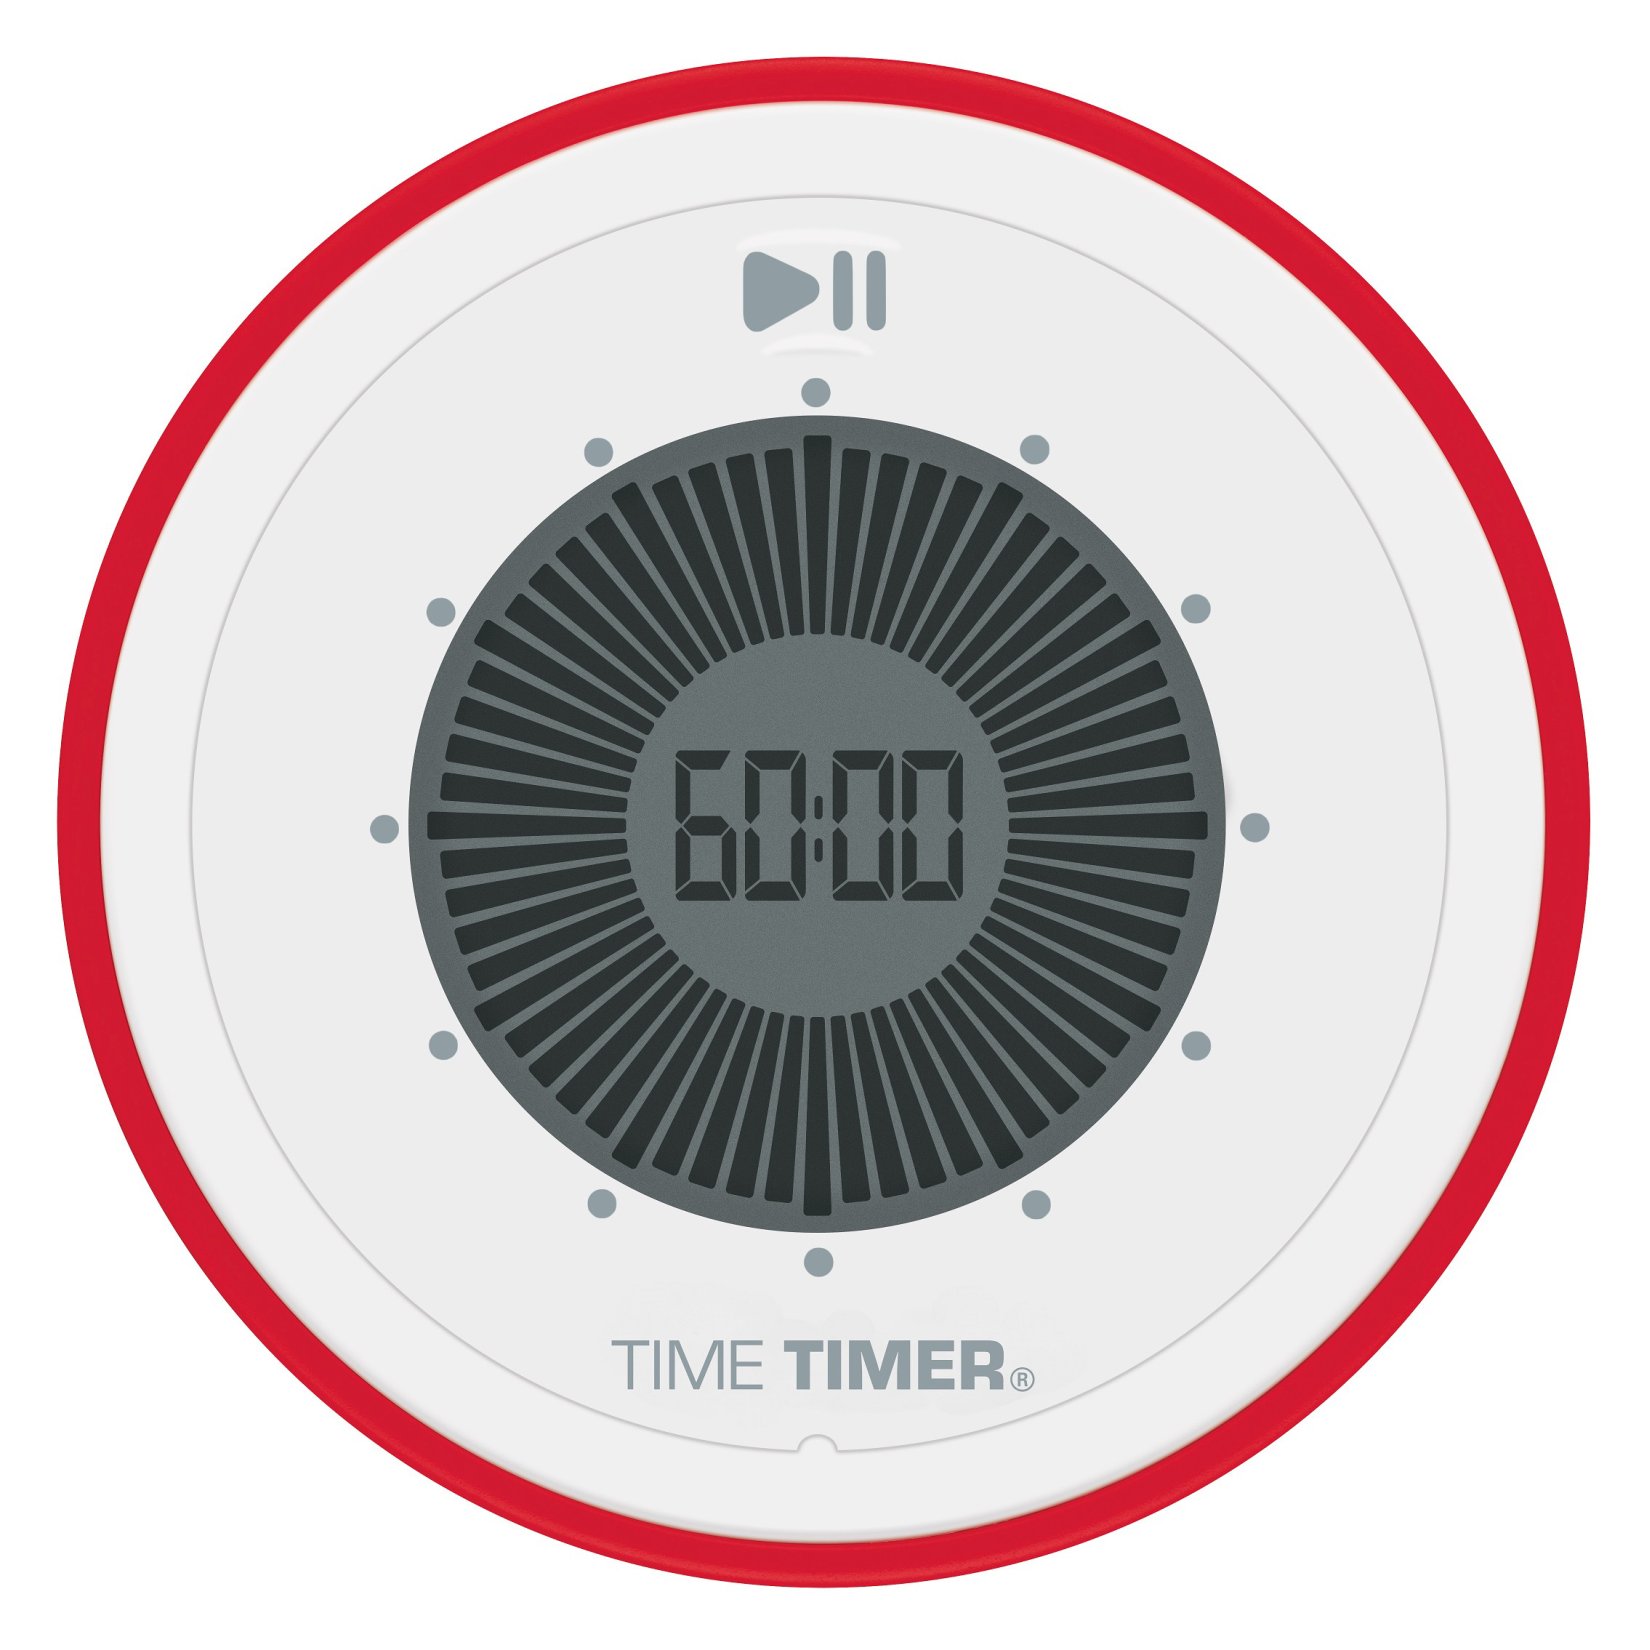 TIME TIMER Twist - 90 Minuten